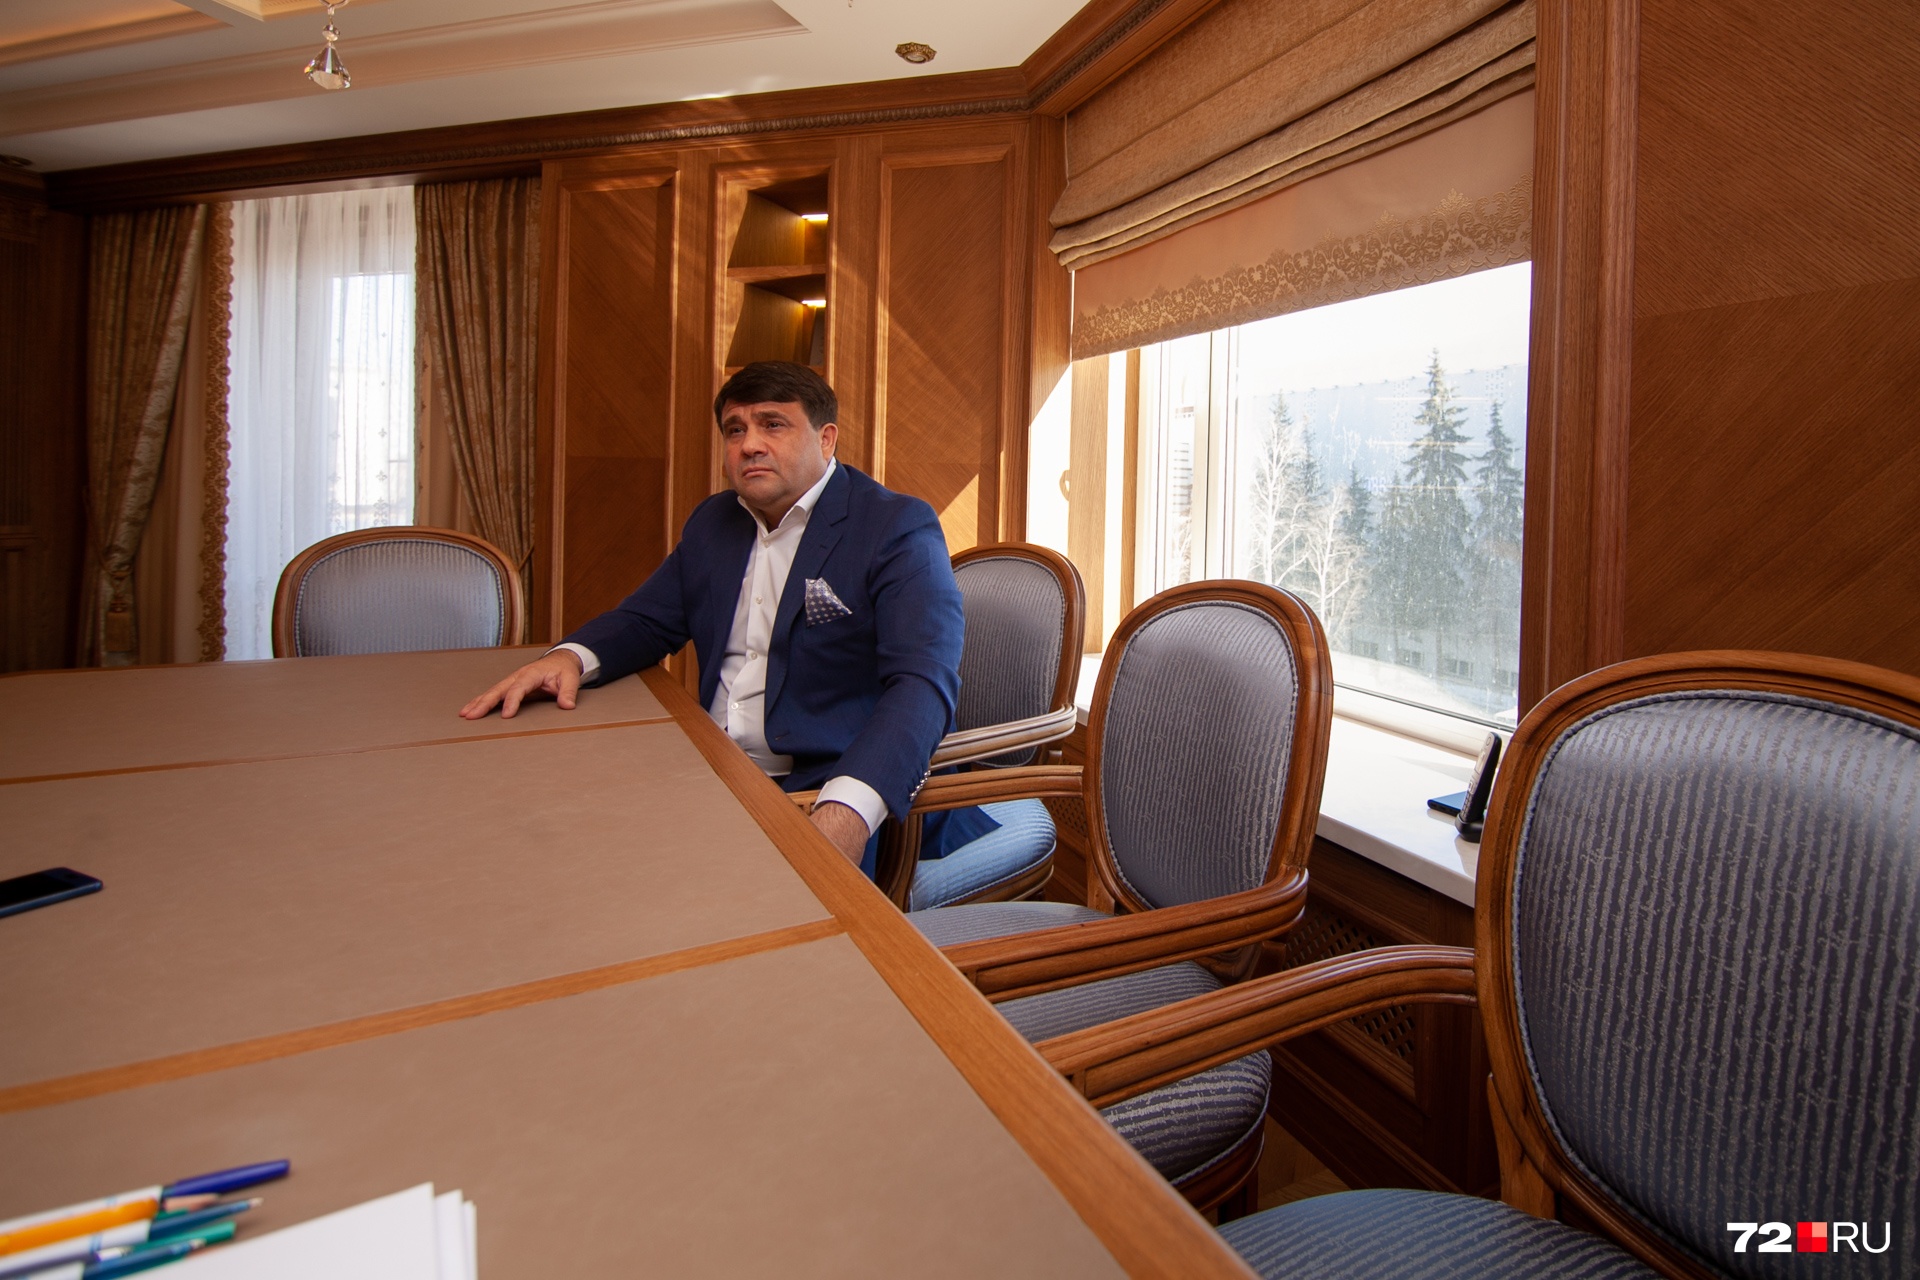 Пискайкин — один из тех депутатов Тюменской областной думы, у которых имеется недвижимость в Европе